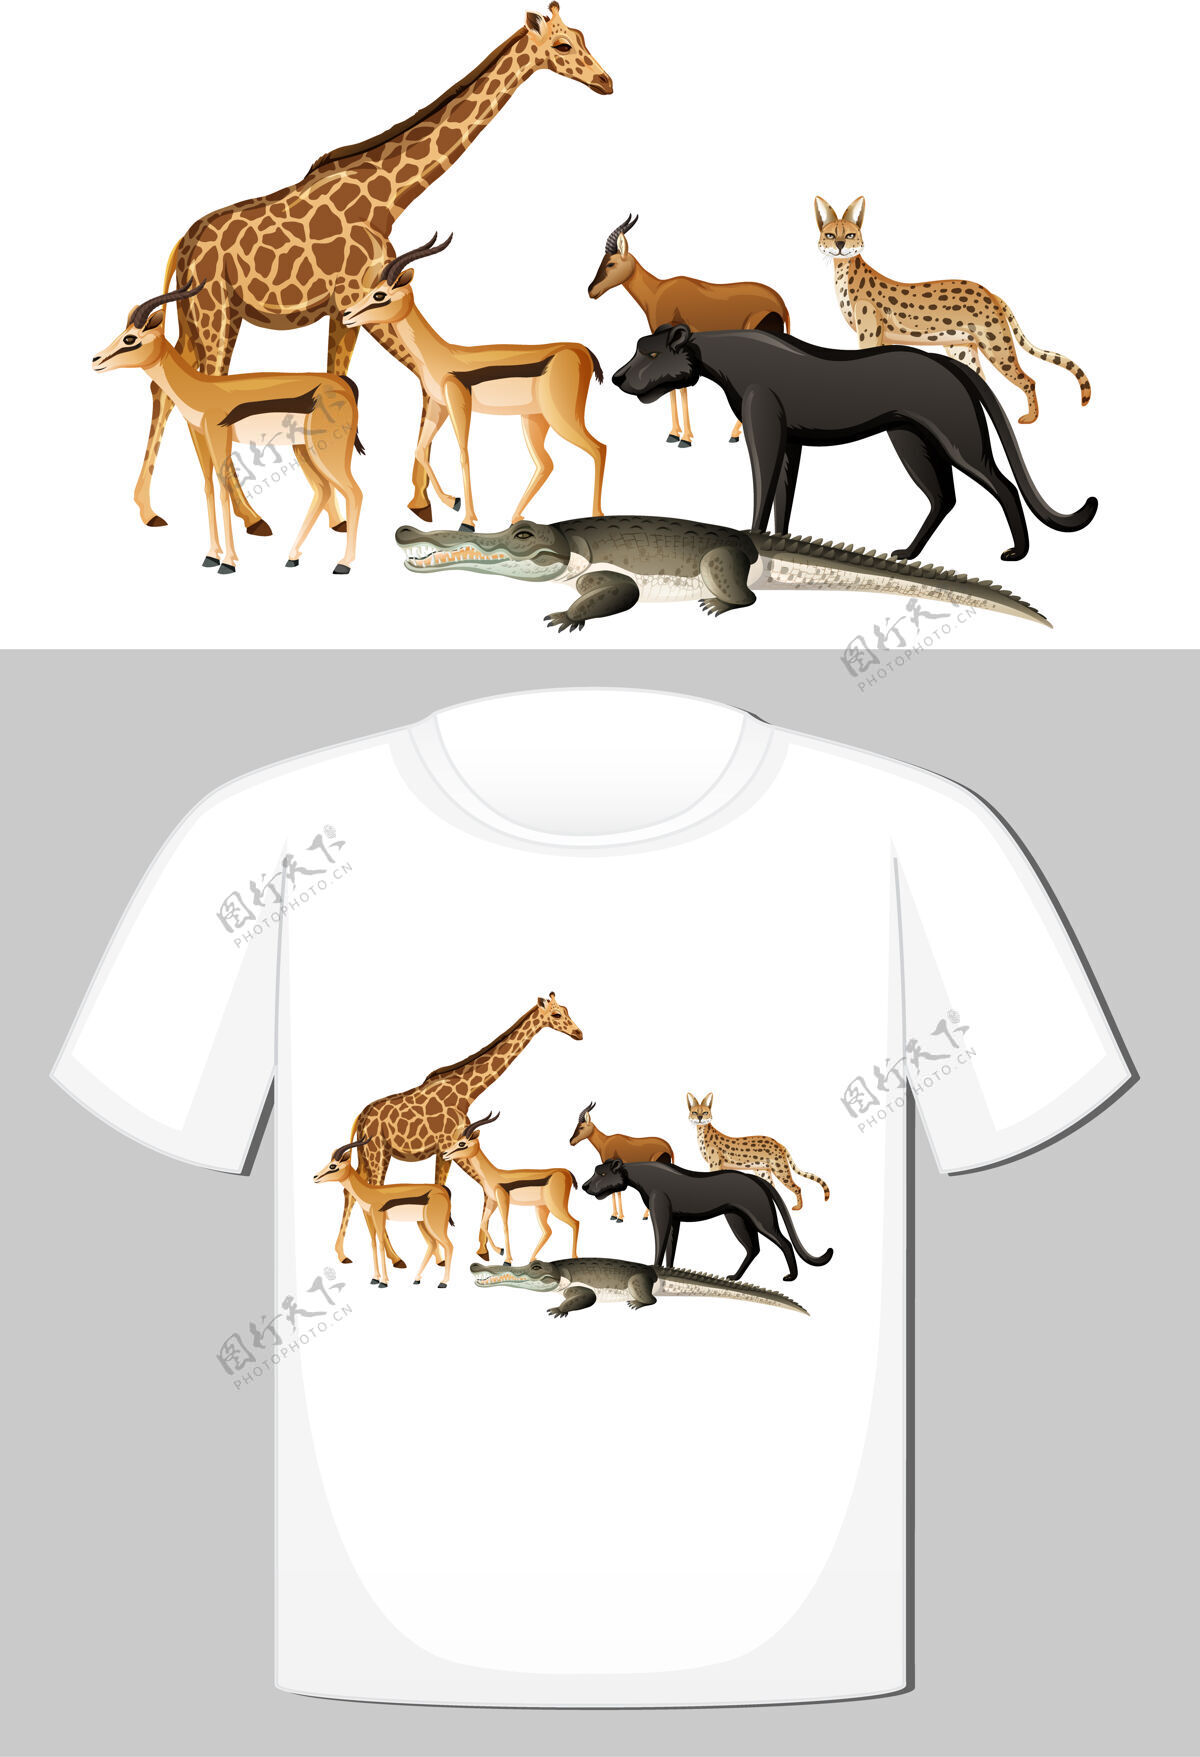 非洲野生动物组t恤设计服装鳄鱼野生